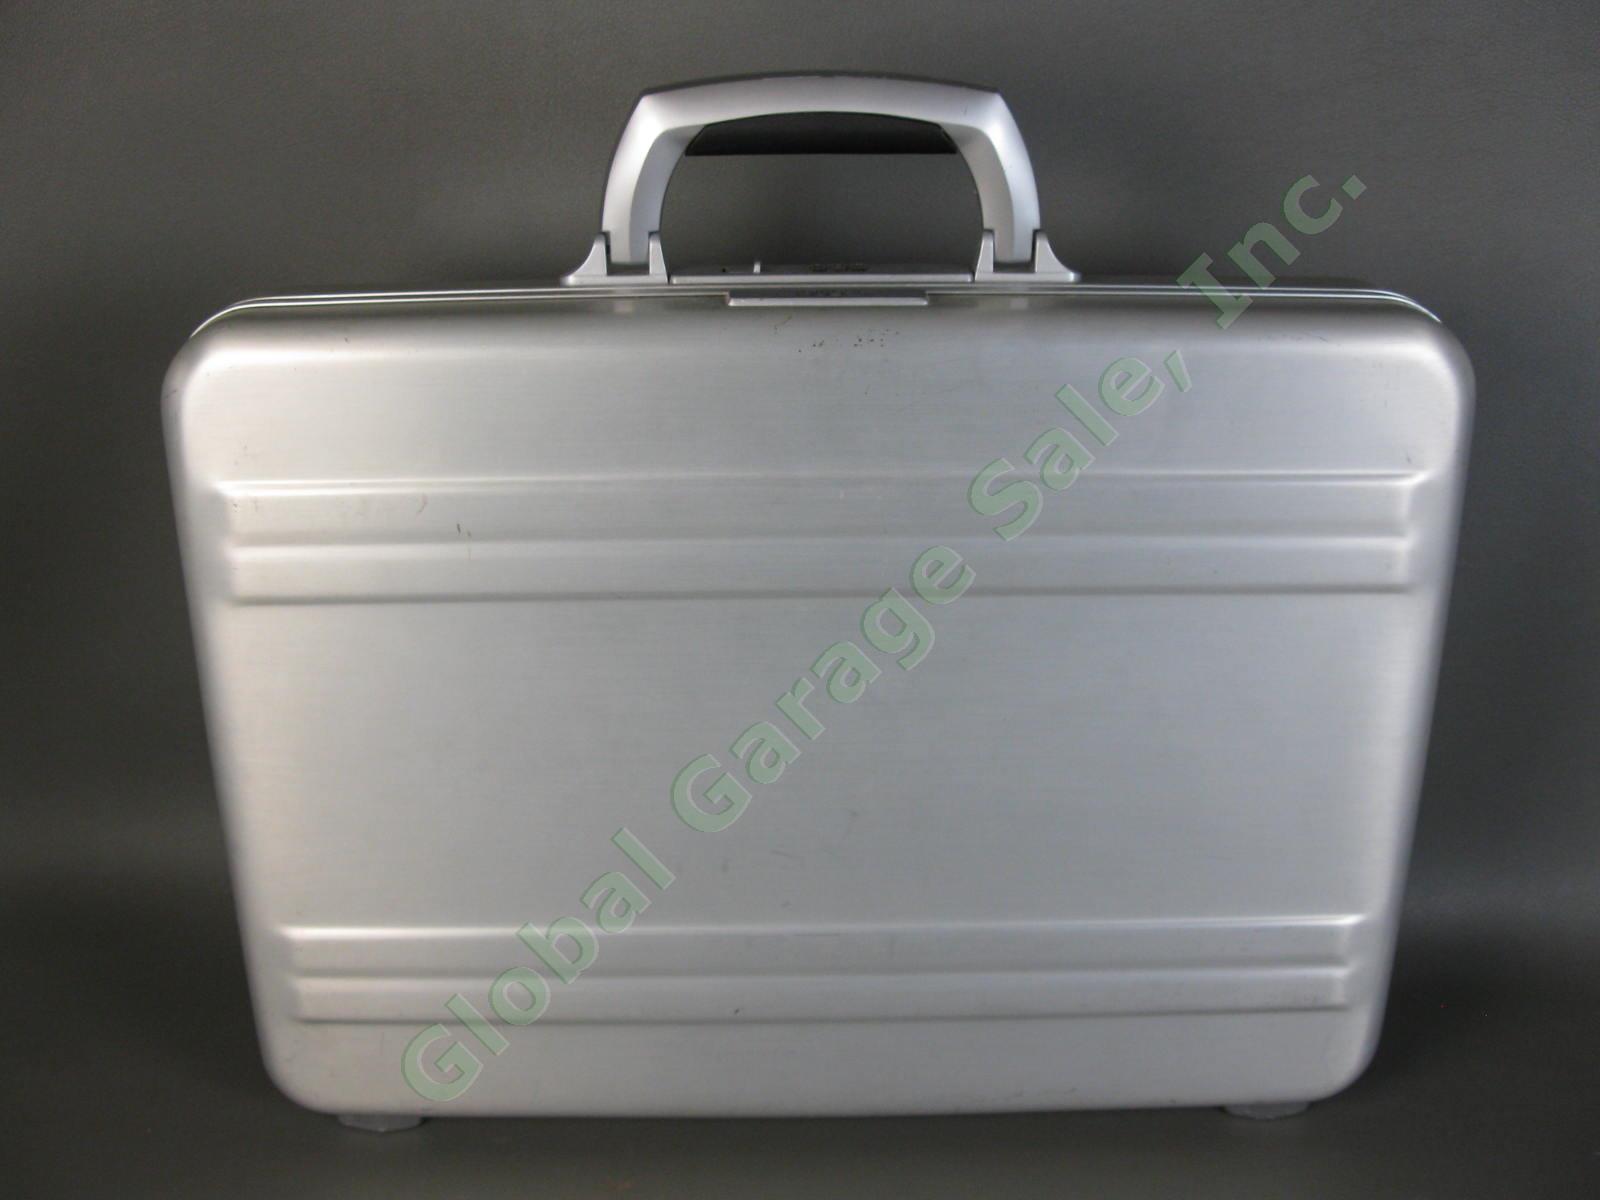 Halliburton ZERO Aluminum Briefcase 18"x13"x3" Combo Lock Excellent Condition NR 4